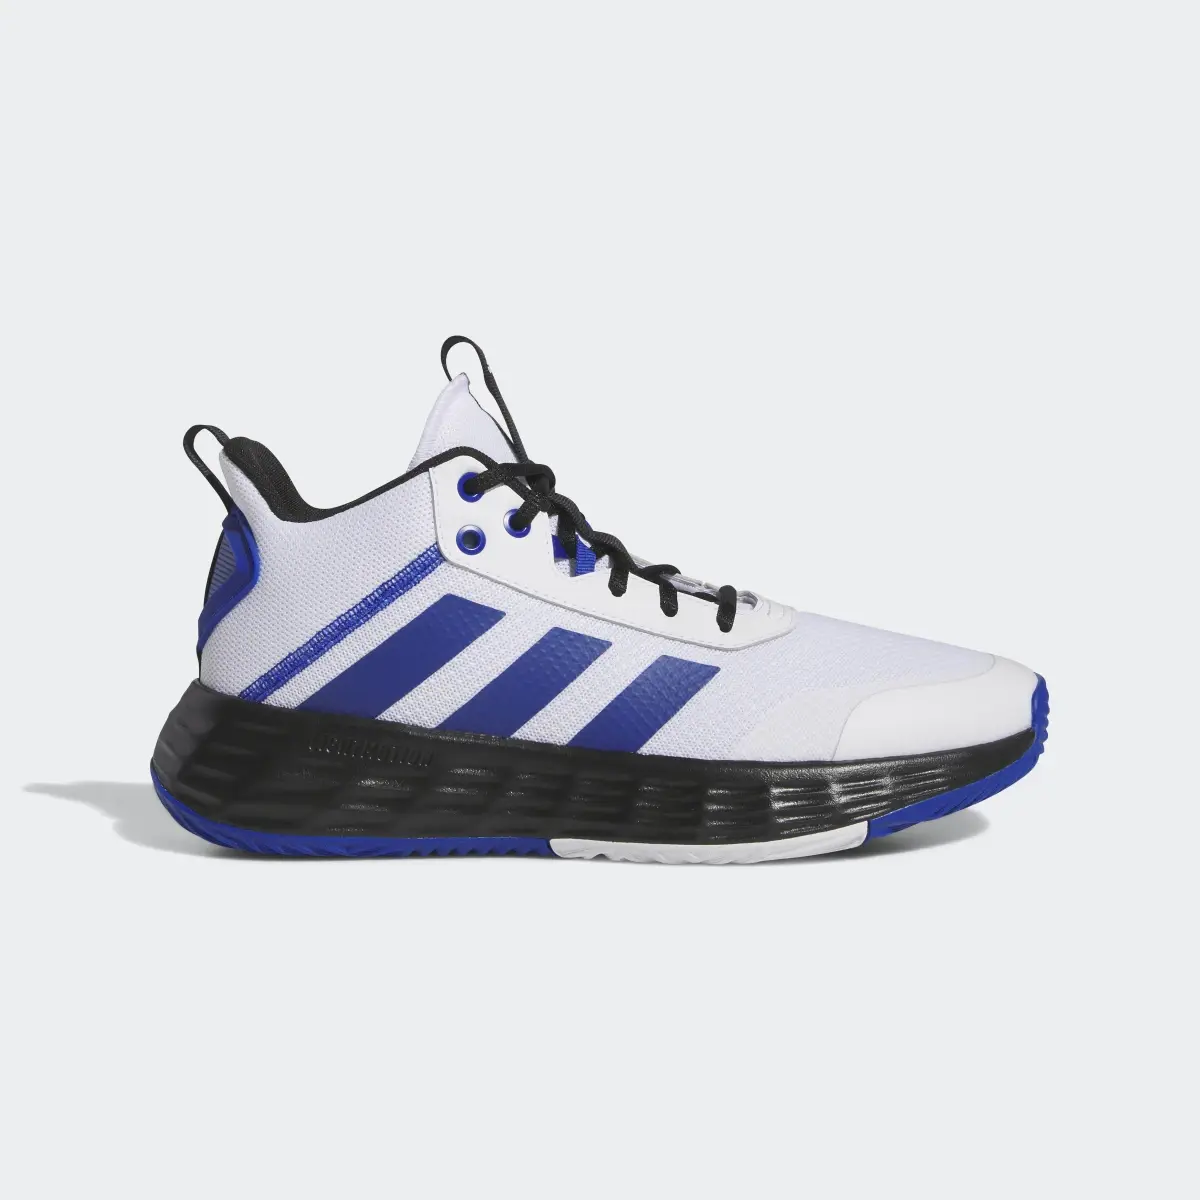 Adidas Ownthegame Ayakkabı. 2